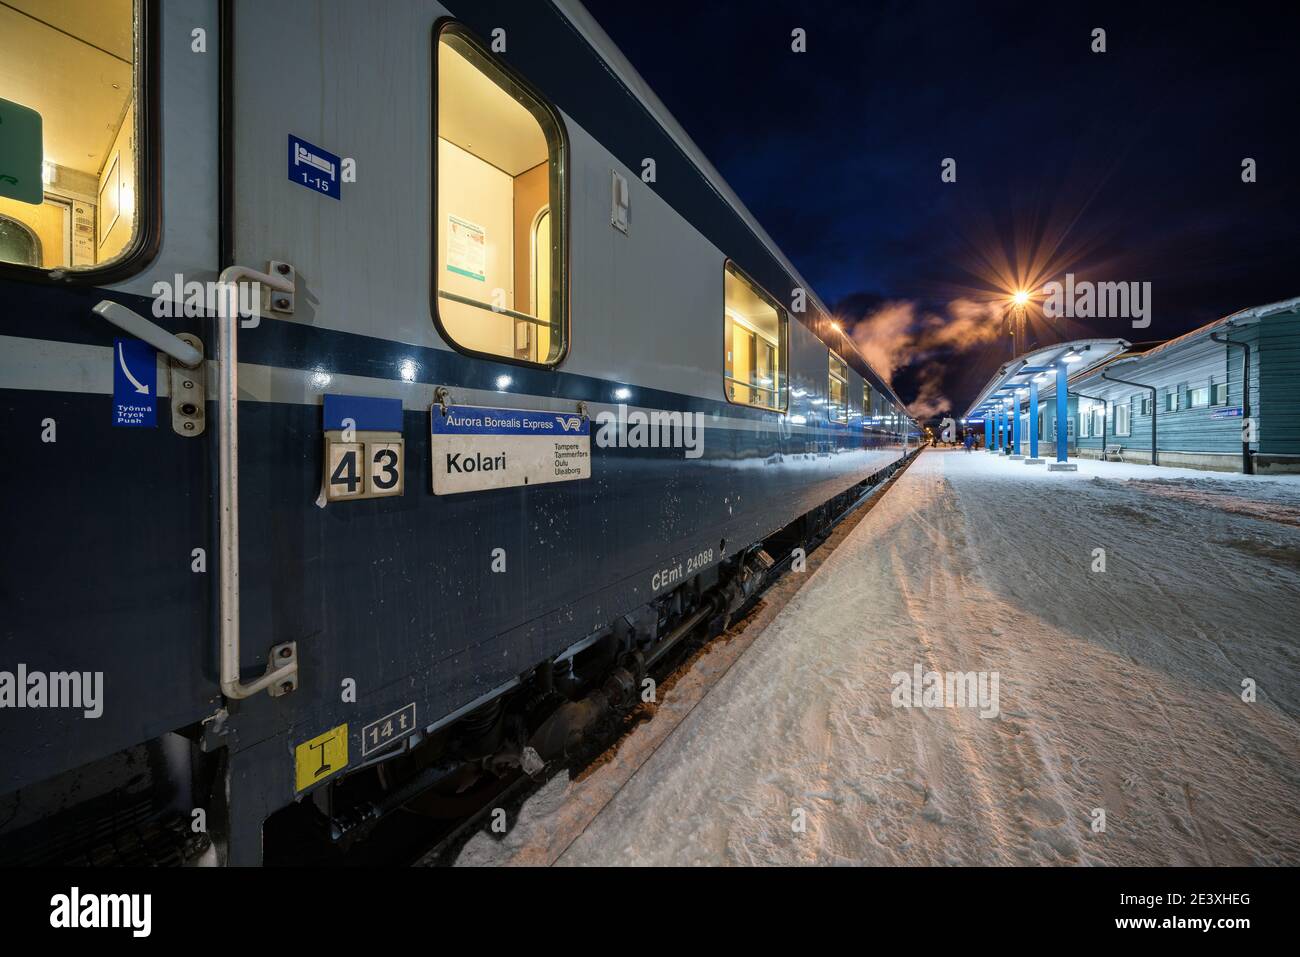 Alla stazione ferroviaria di Kolari, Lapponia, Finlandia Foto Stock